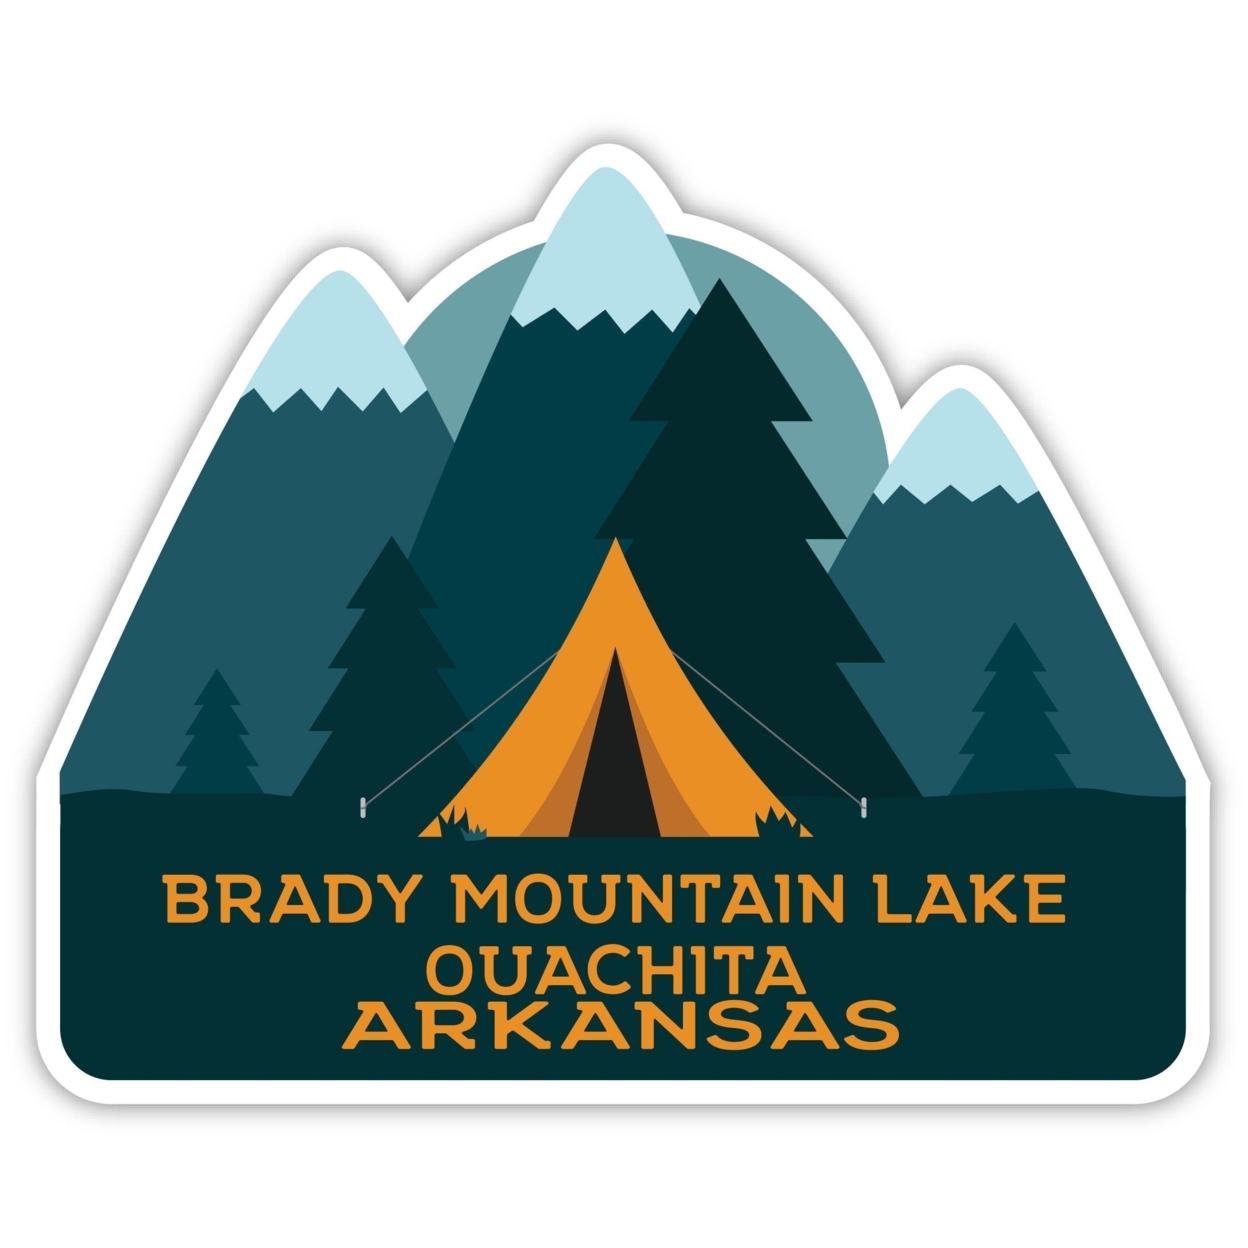 Brady Mountain Lake Ouachita Arkansas Souvenir Decorative Stickers (Choose Theme And Size) - 4-Pack, 6-Inch, Tent